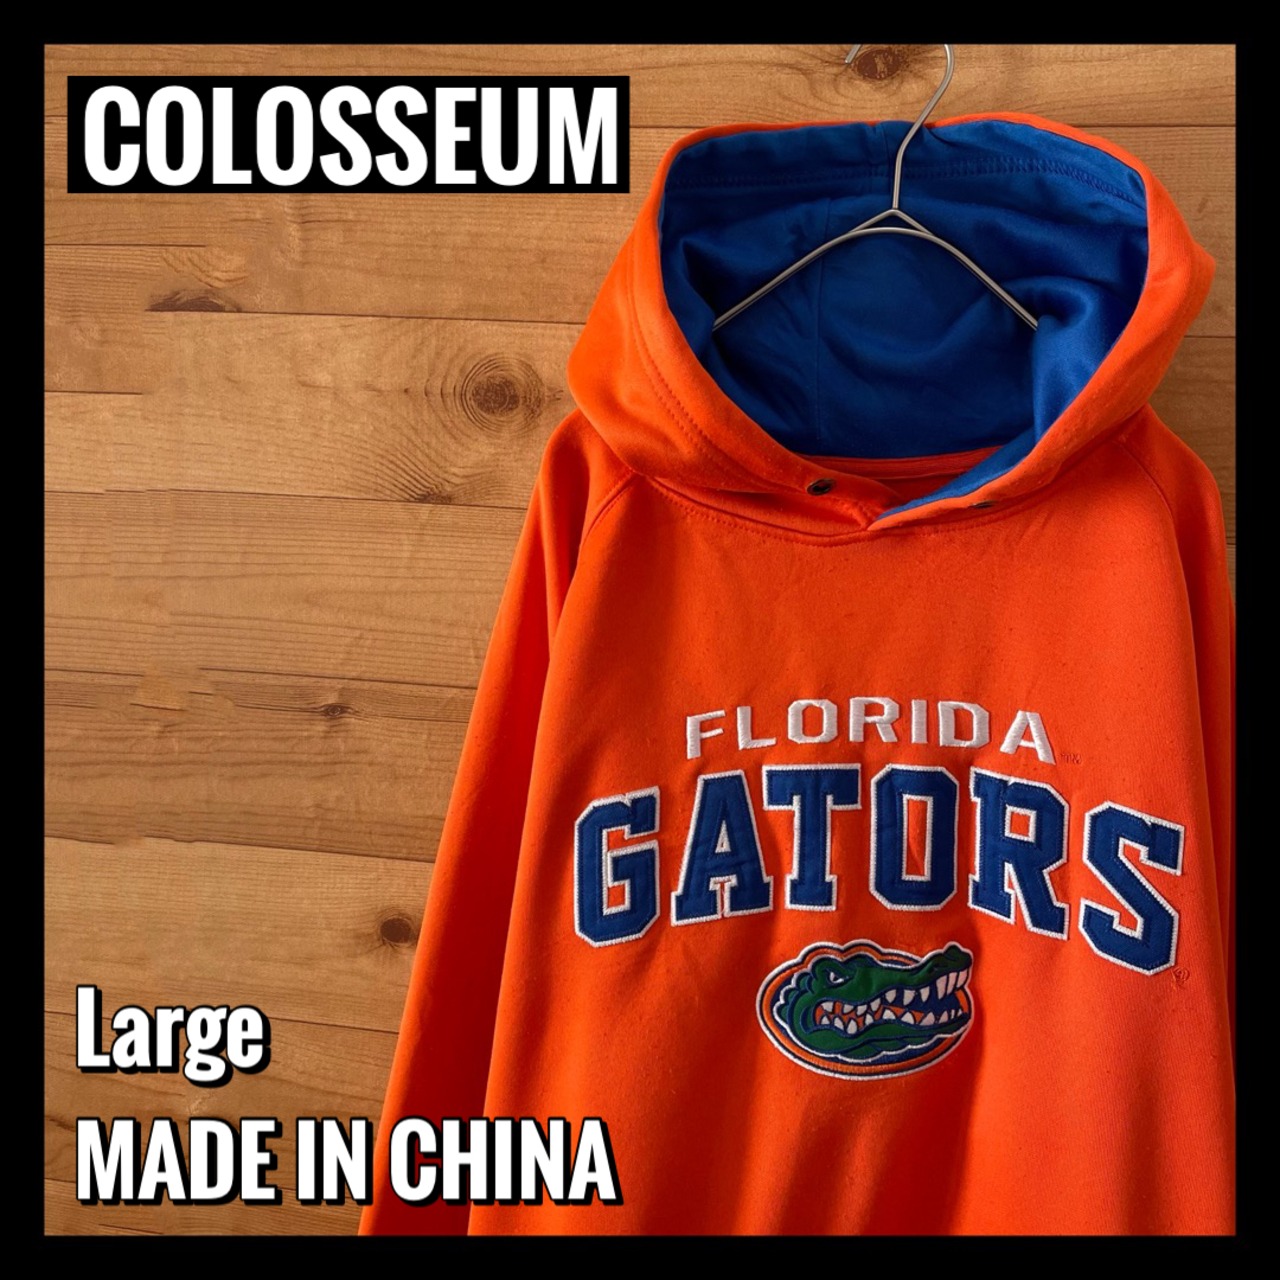 【COLOSSEUM】カレッジ フロリダ大学 ゲーターズ 刺繍ロゴ ポリパーカー Lサイズ US古着 Florida Gators football